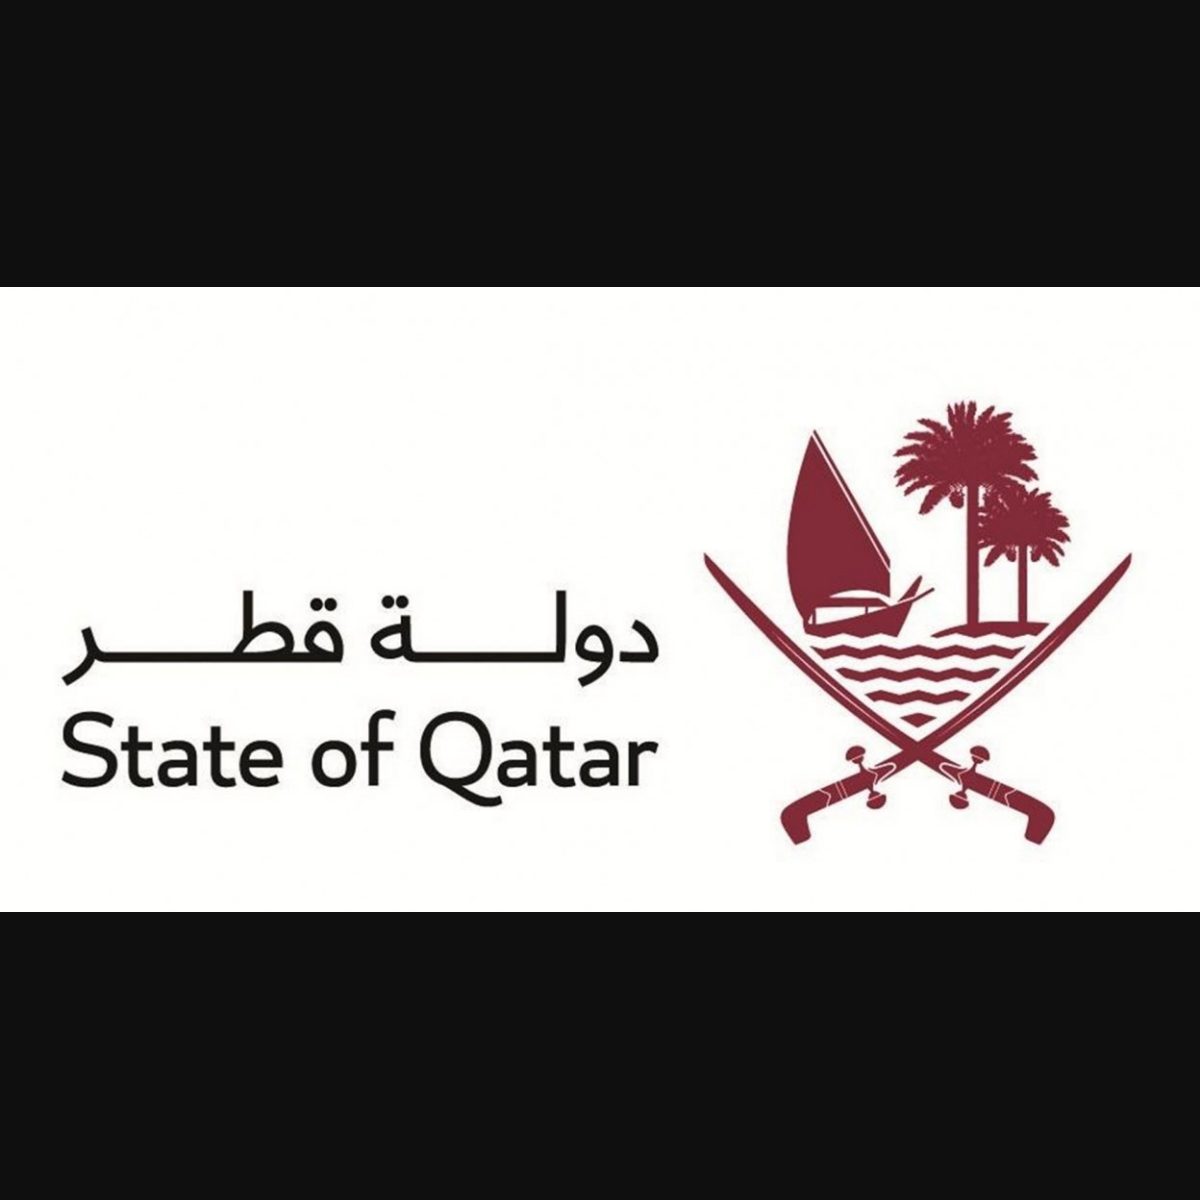 pearl qatar logo